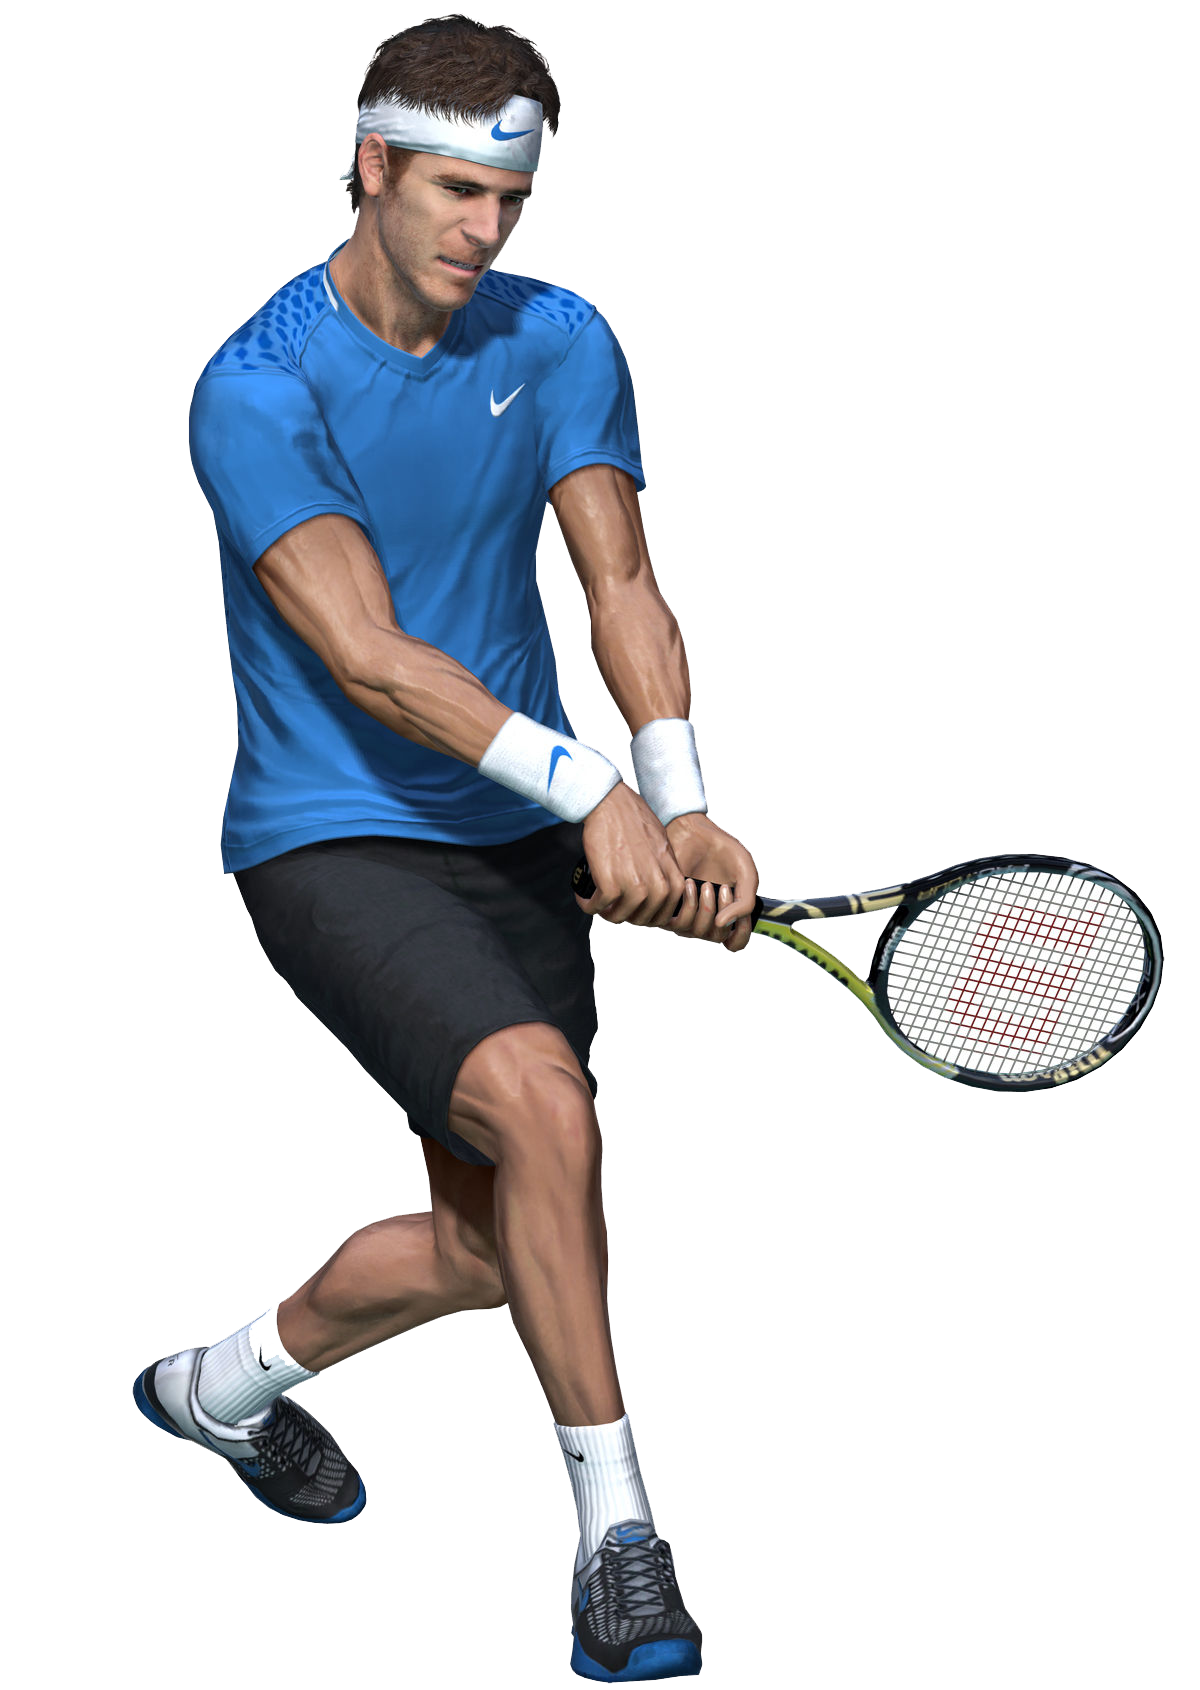 Tennis player man PNG image